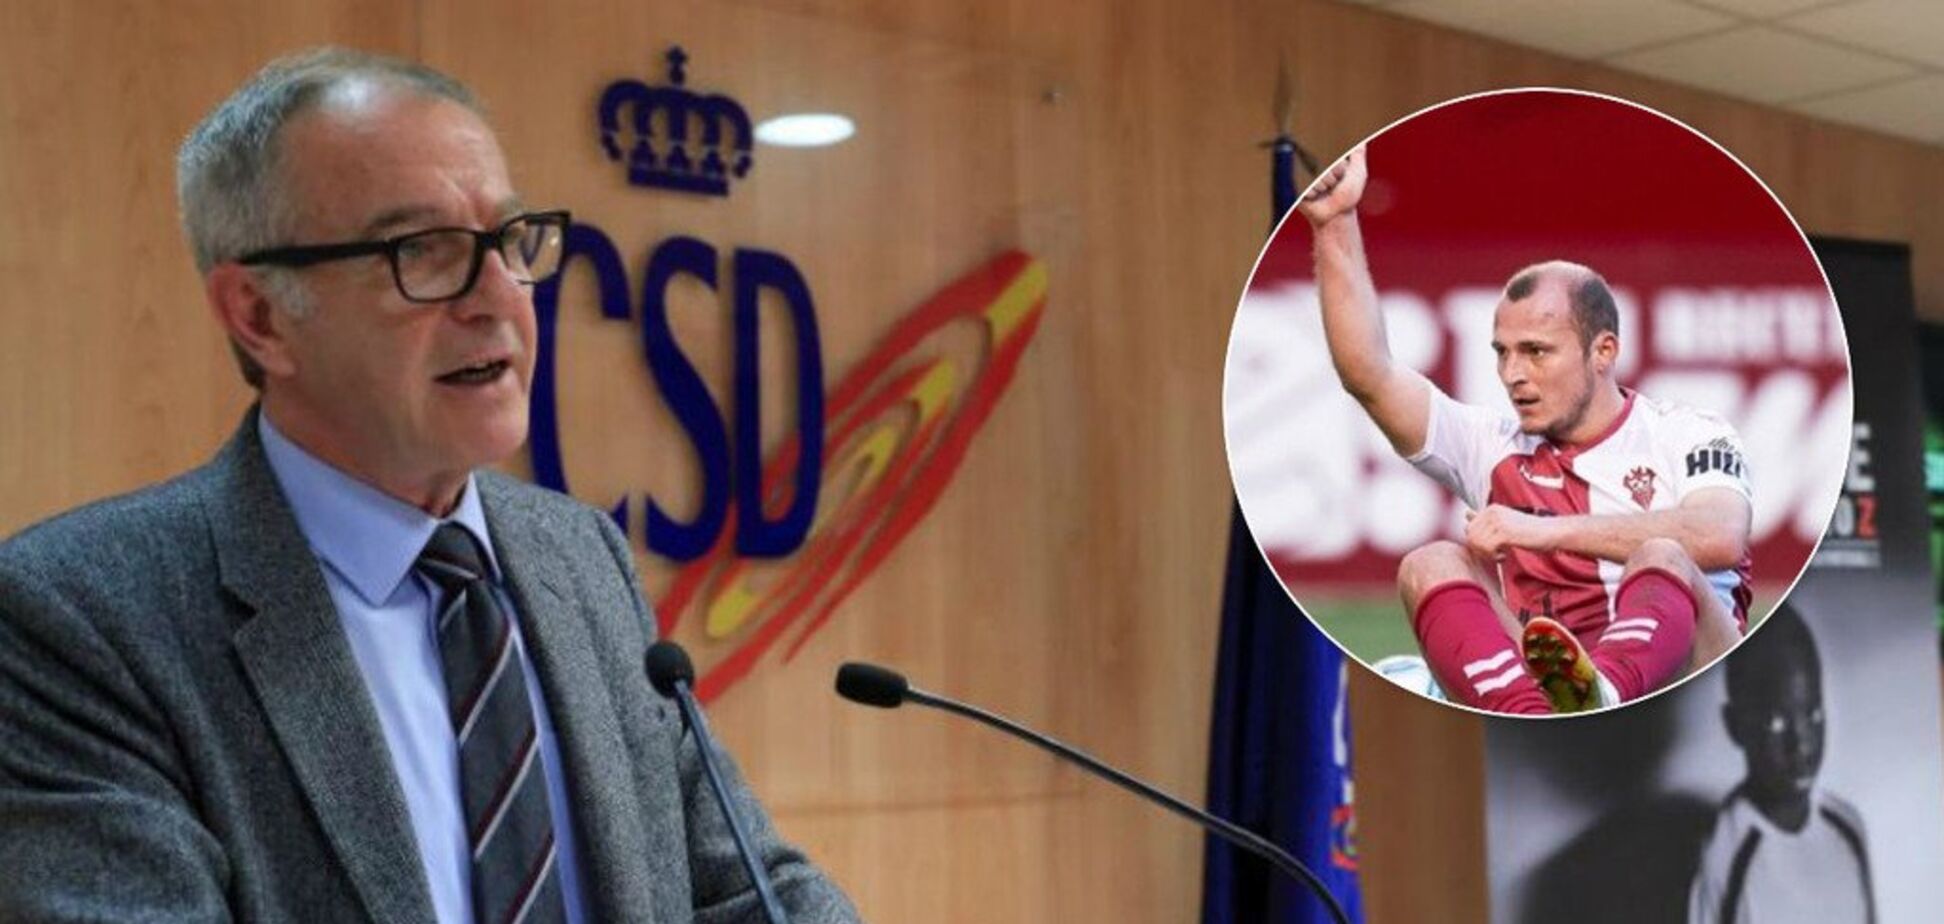 'Положить конец': министр спорта Испании сделал резкое заявление о скандале с Зозулей